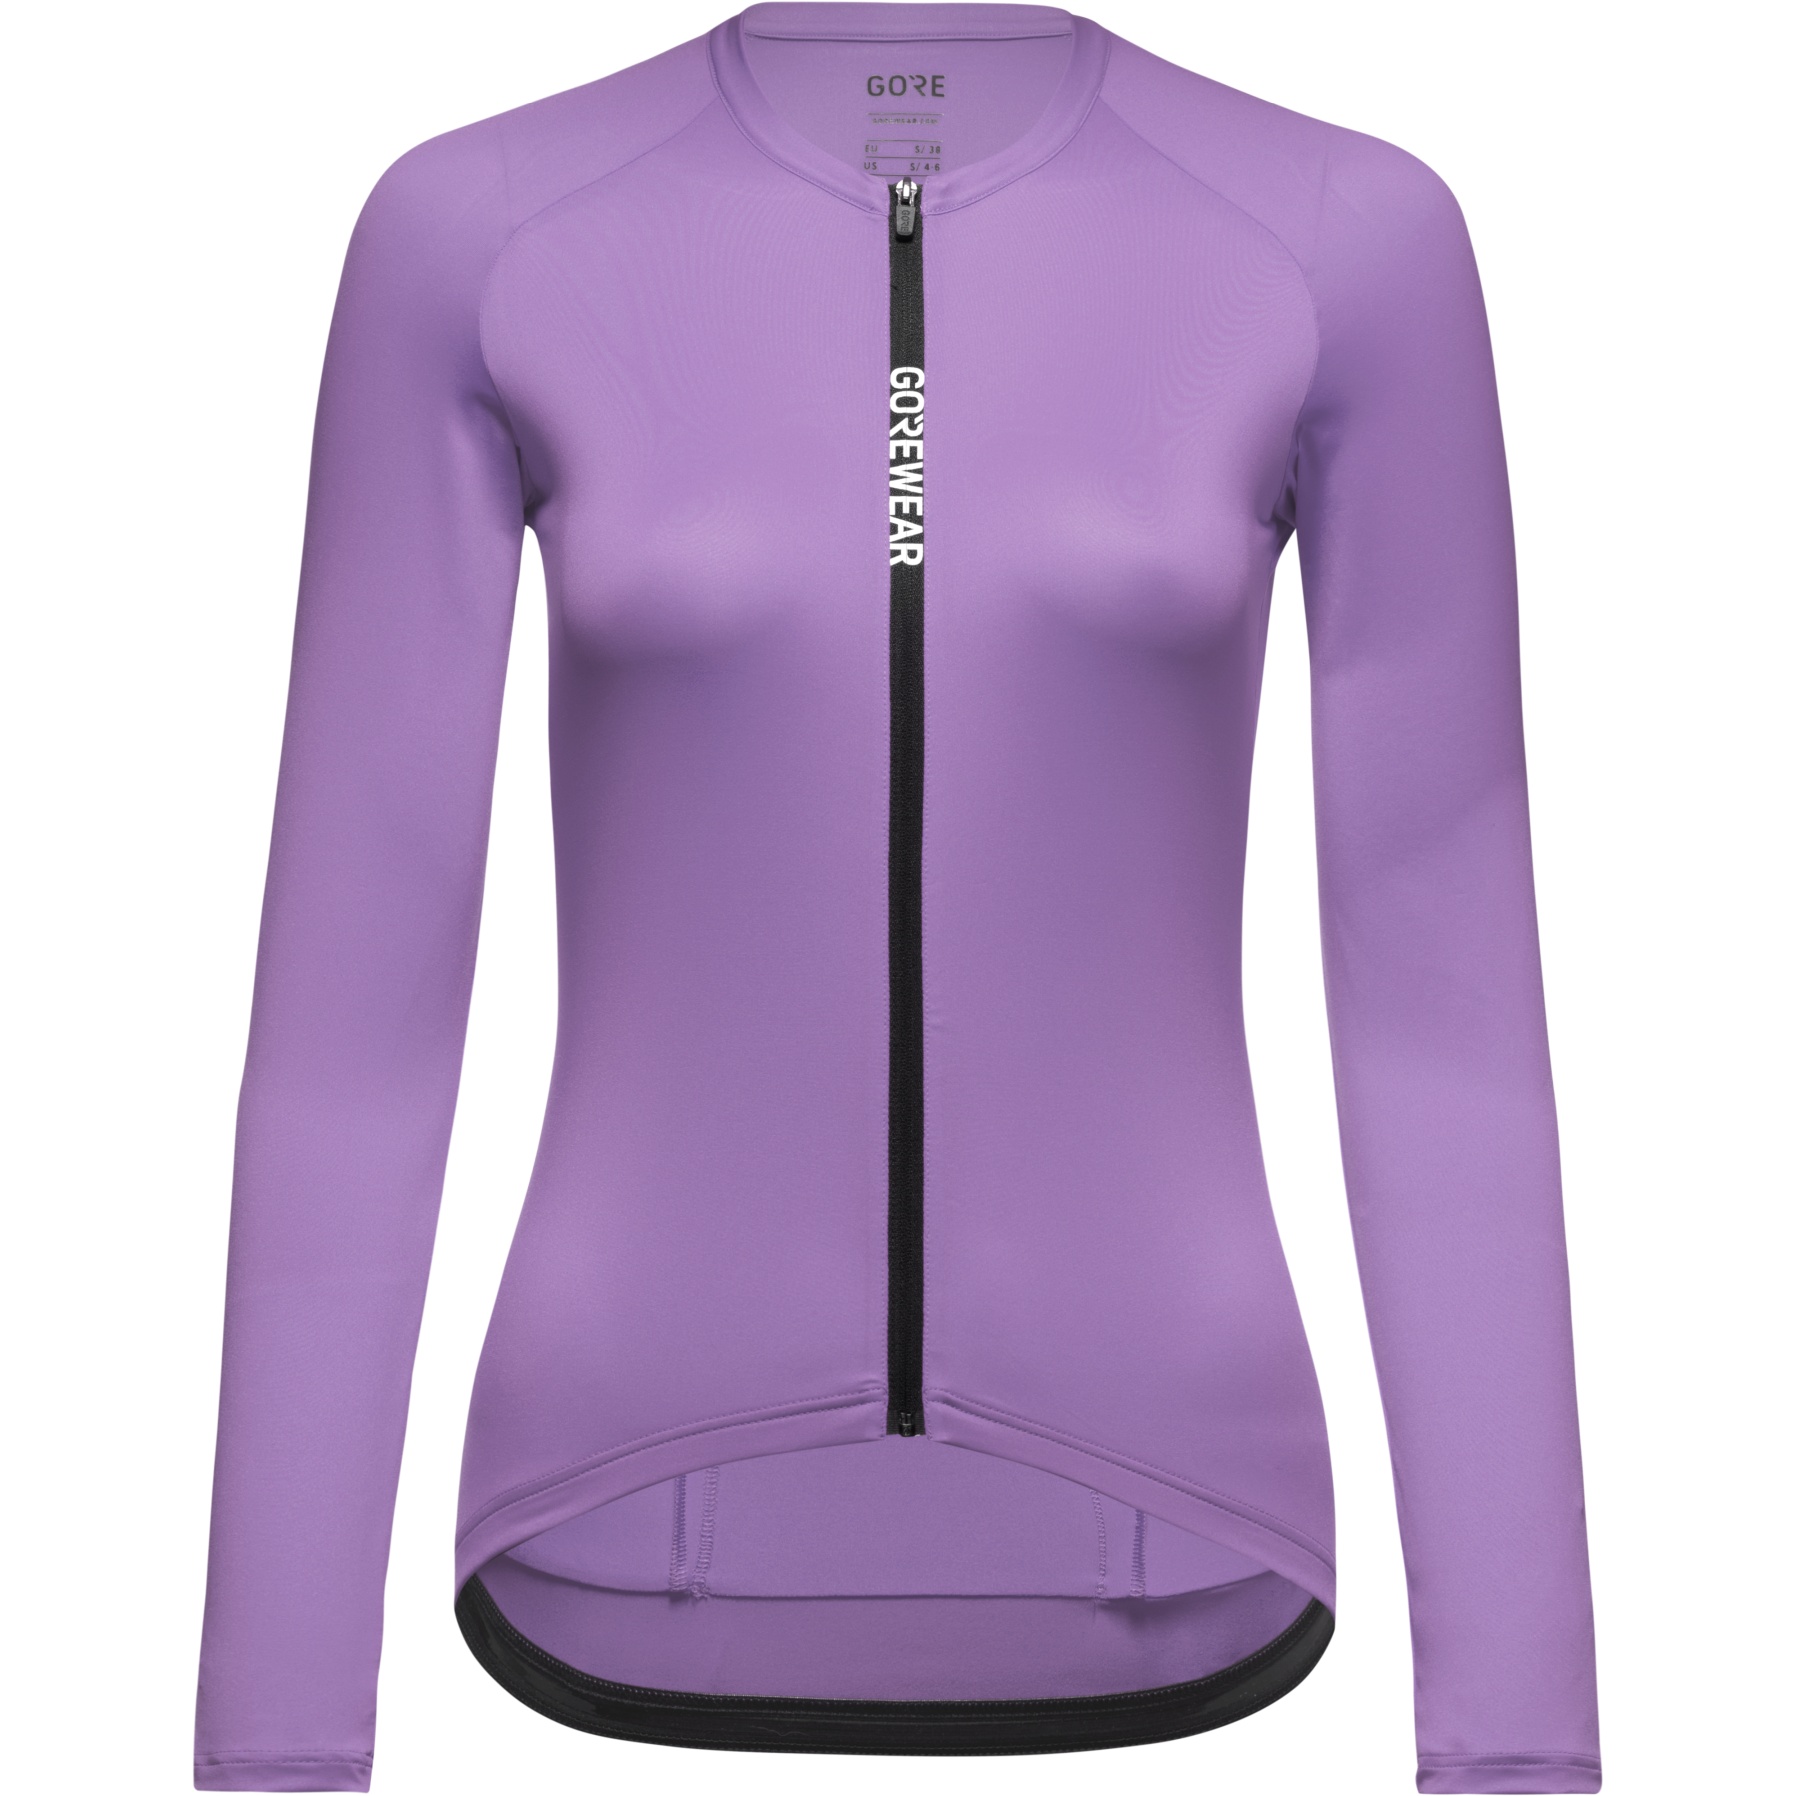 Produktbild von GOREWEAR Spinshift Langarm-Trikot Damen - scrub purple BX00